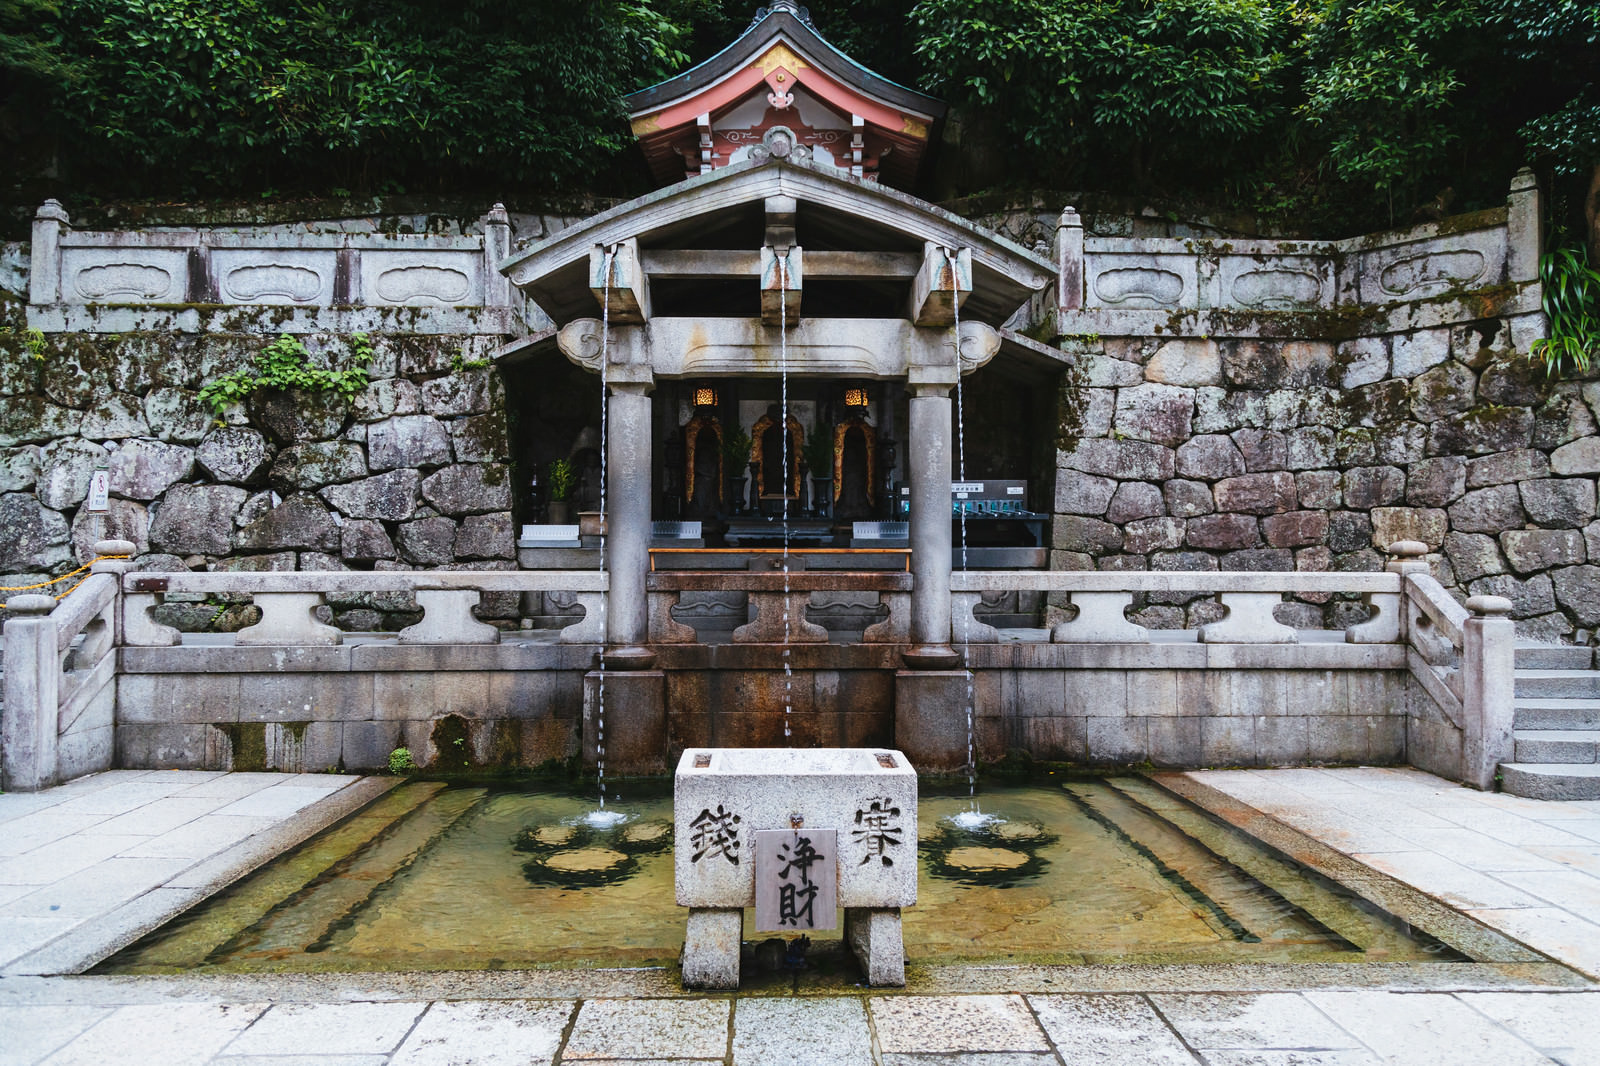 京都 清水寺の 音羽の滝 の写真 画像 フリー素材 ぱくたそ